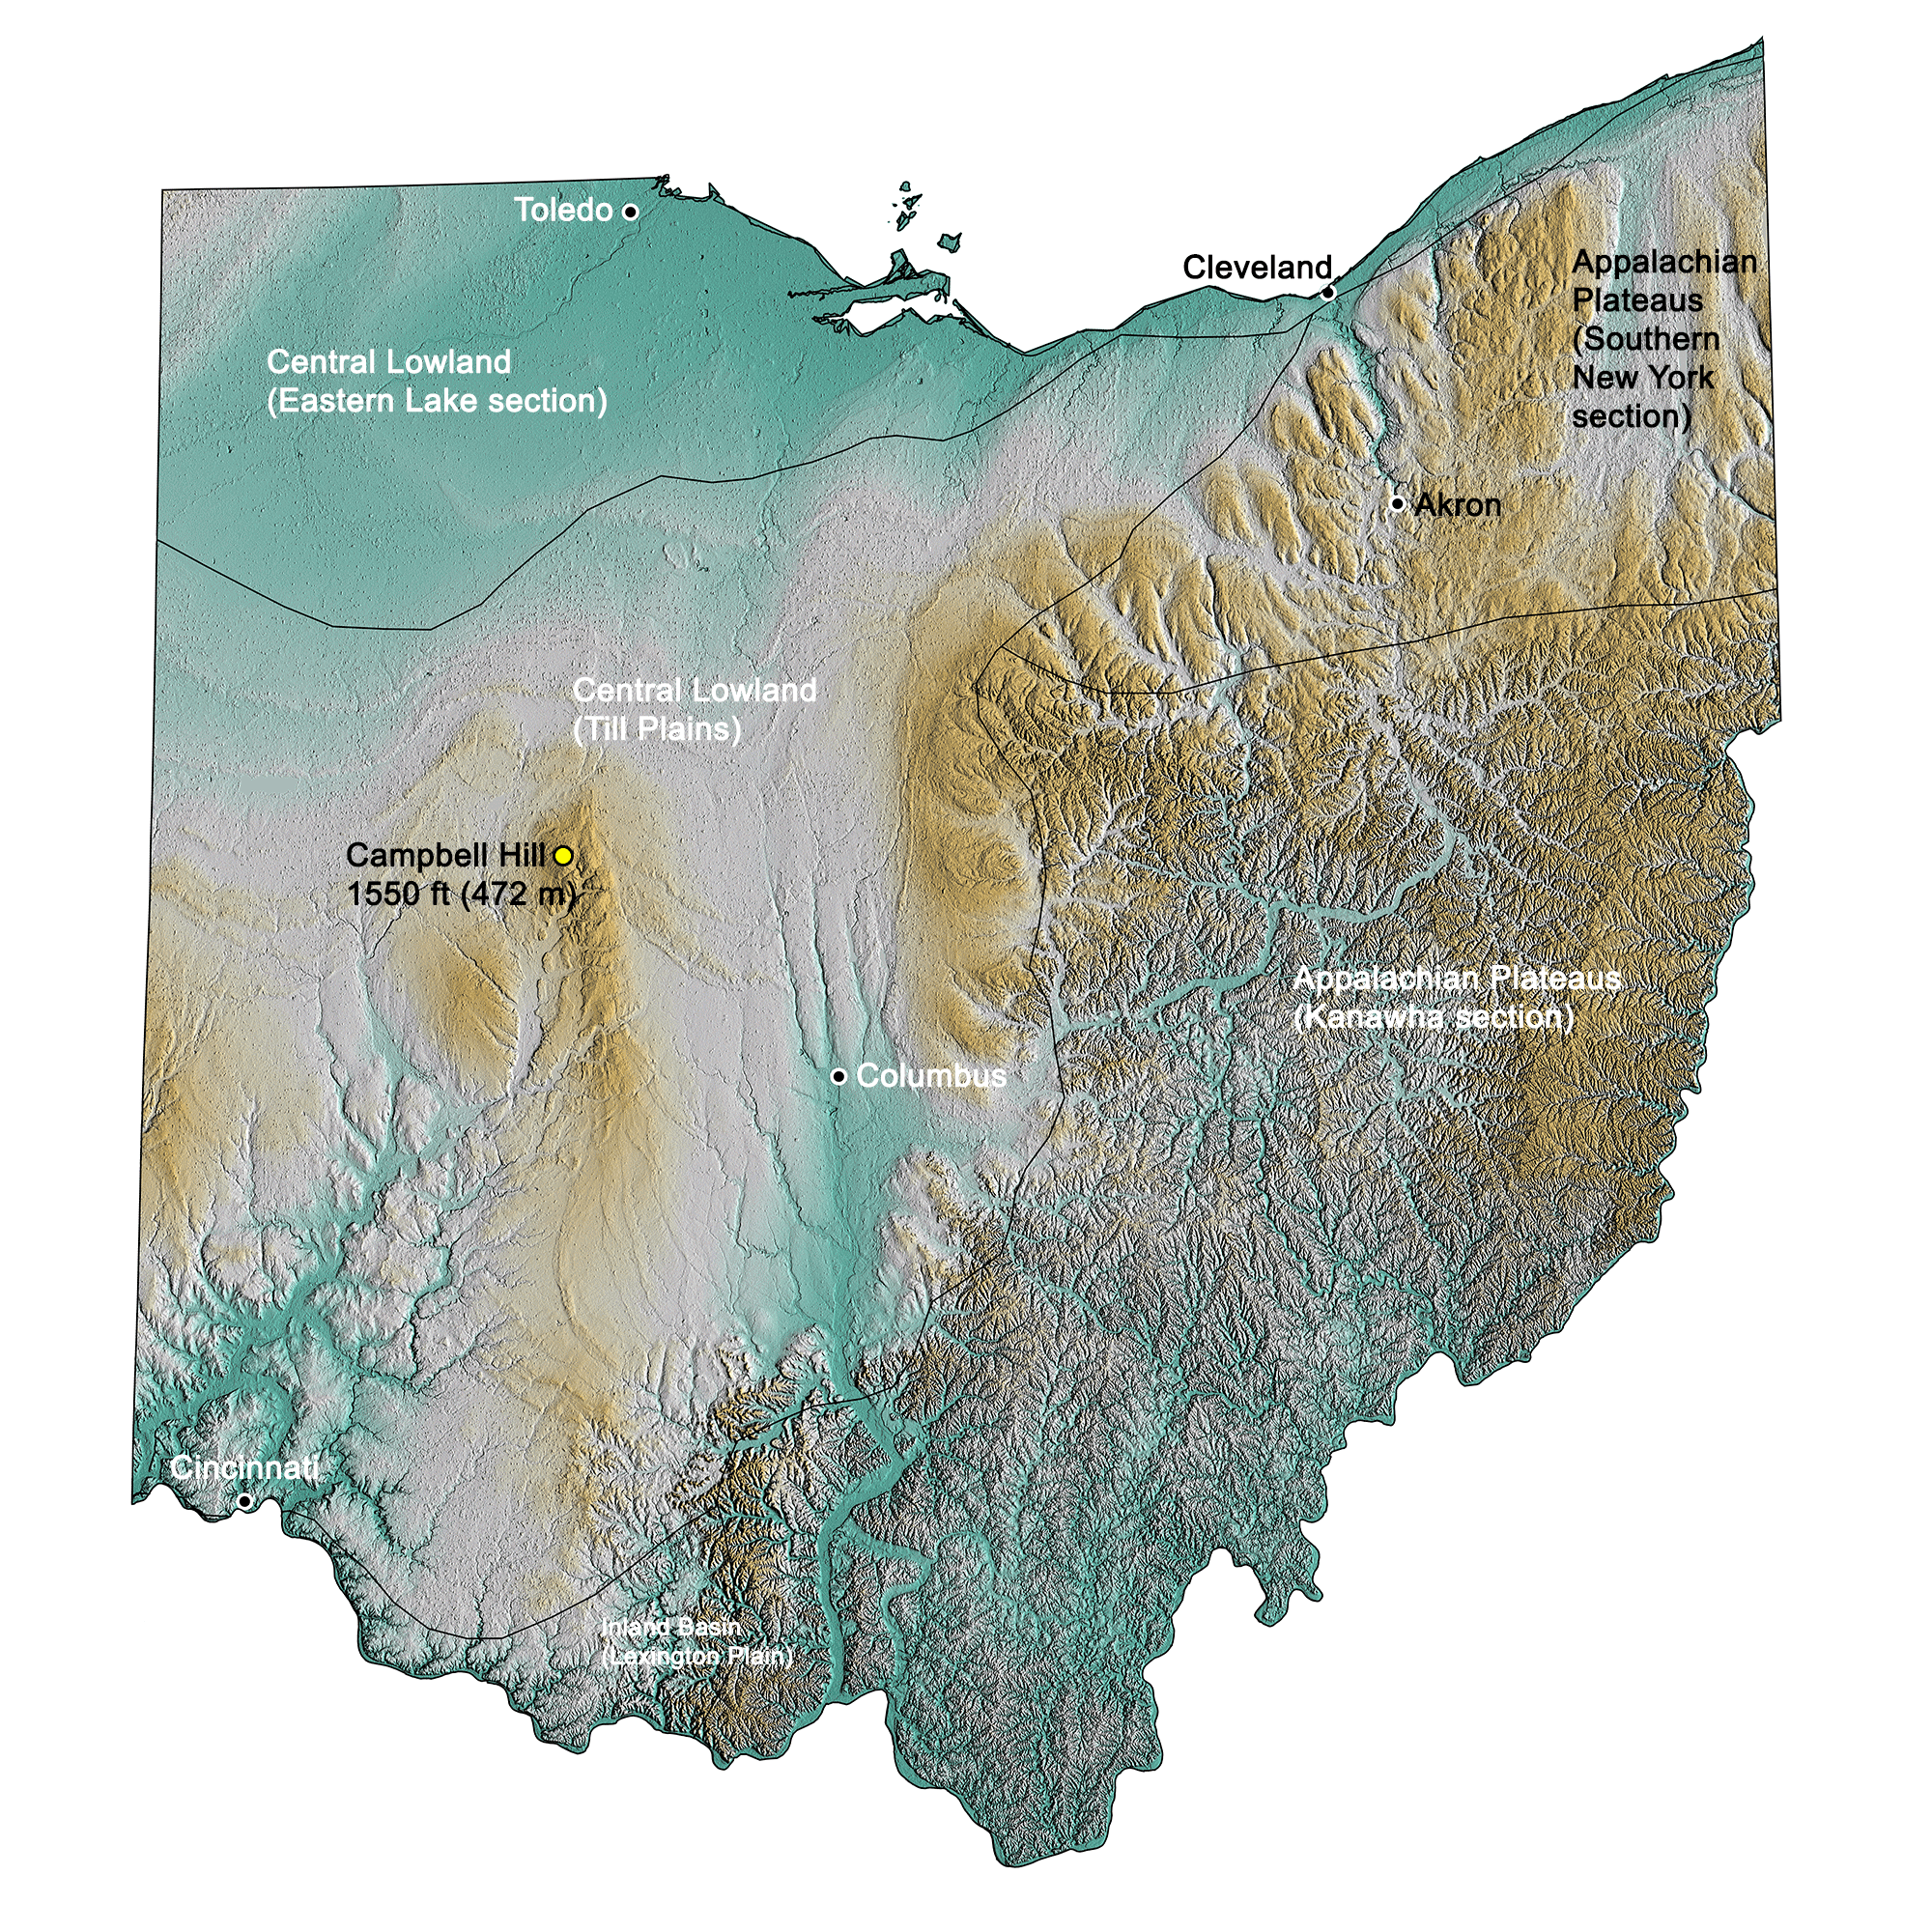 Topographic map of Ohio.